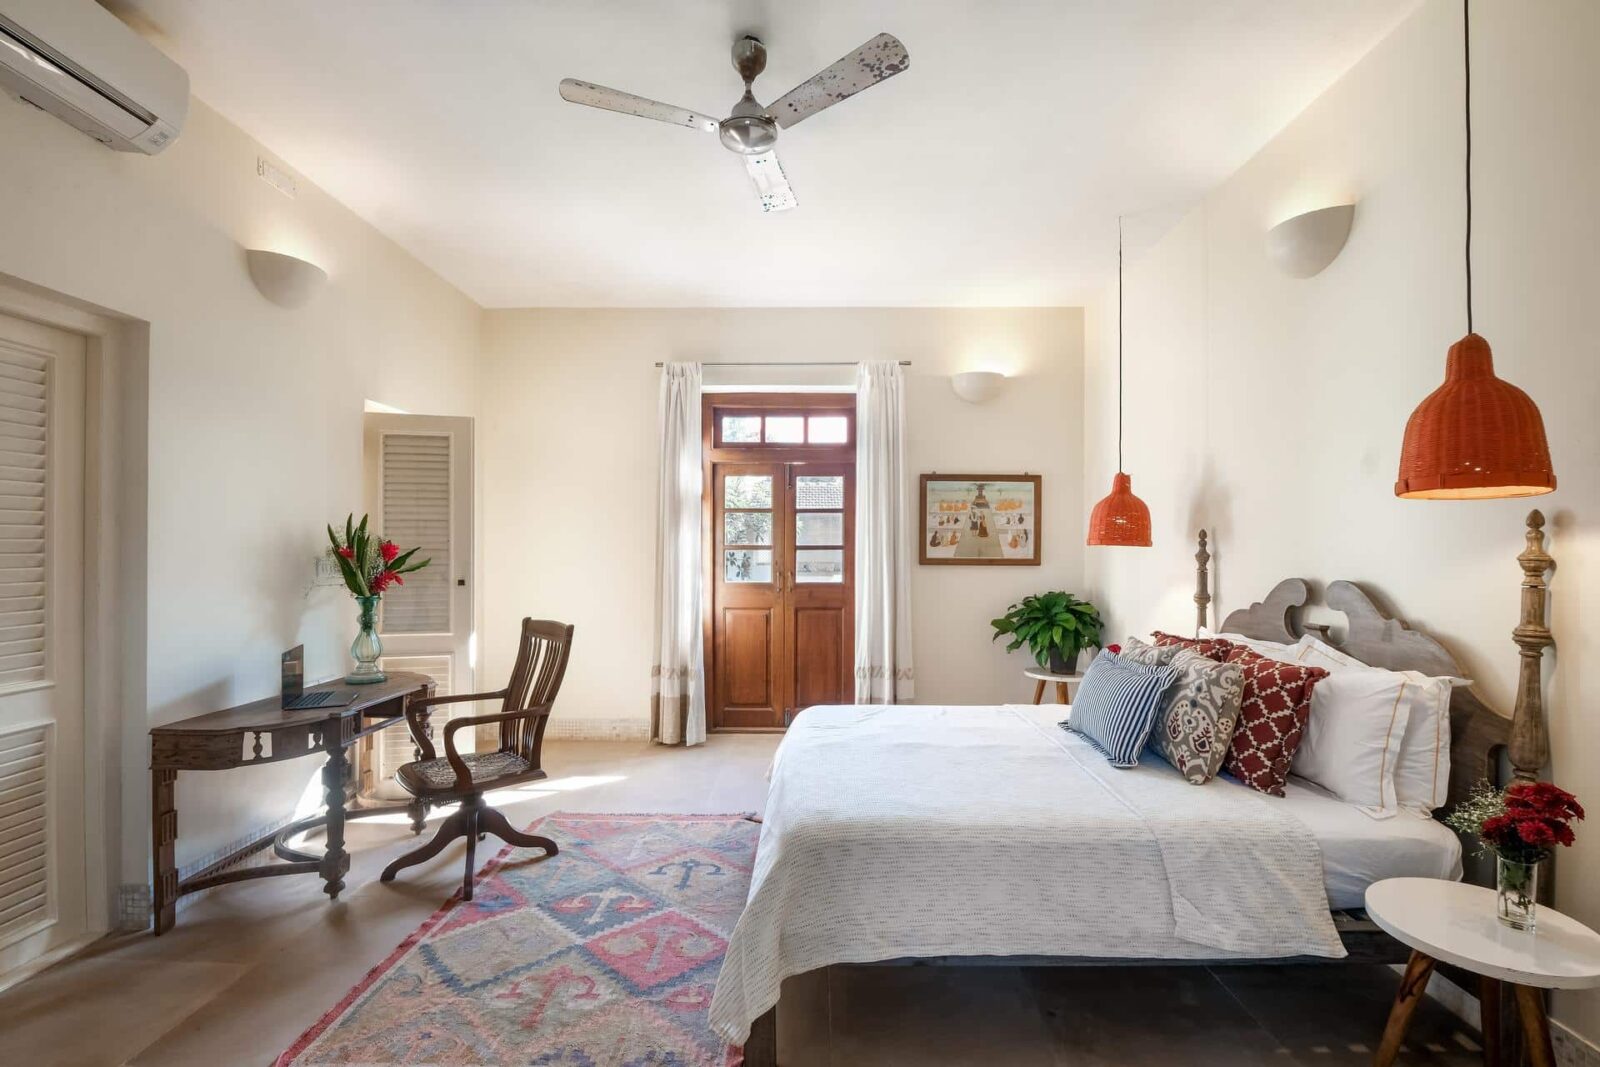 Villa Verde - Premium Villas for Sale in Goa - Stunning Bedroom